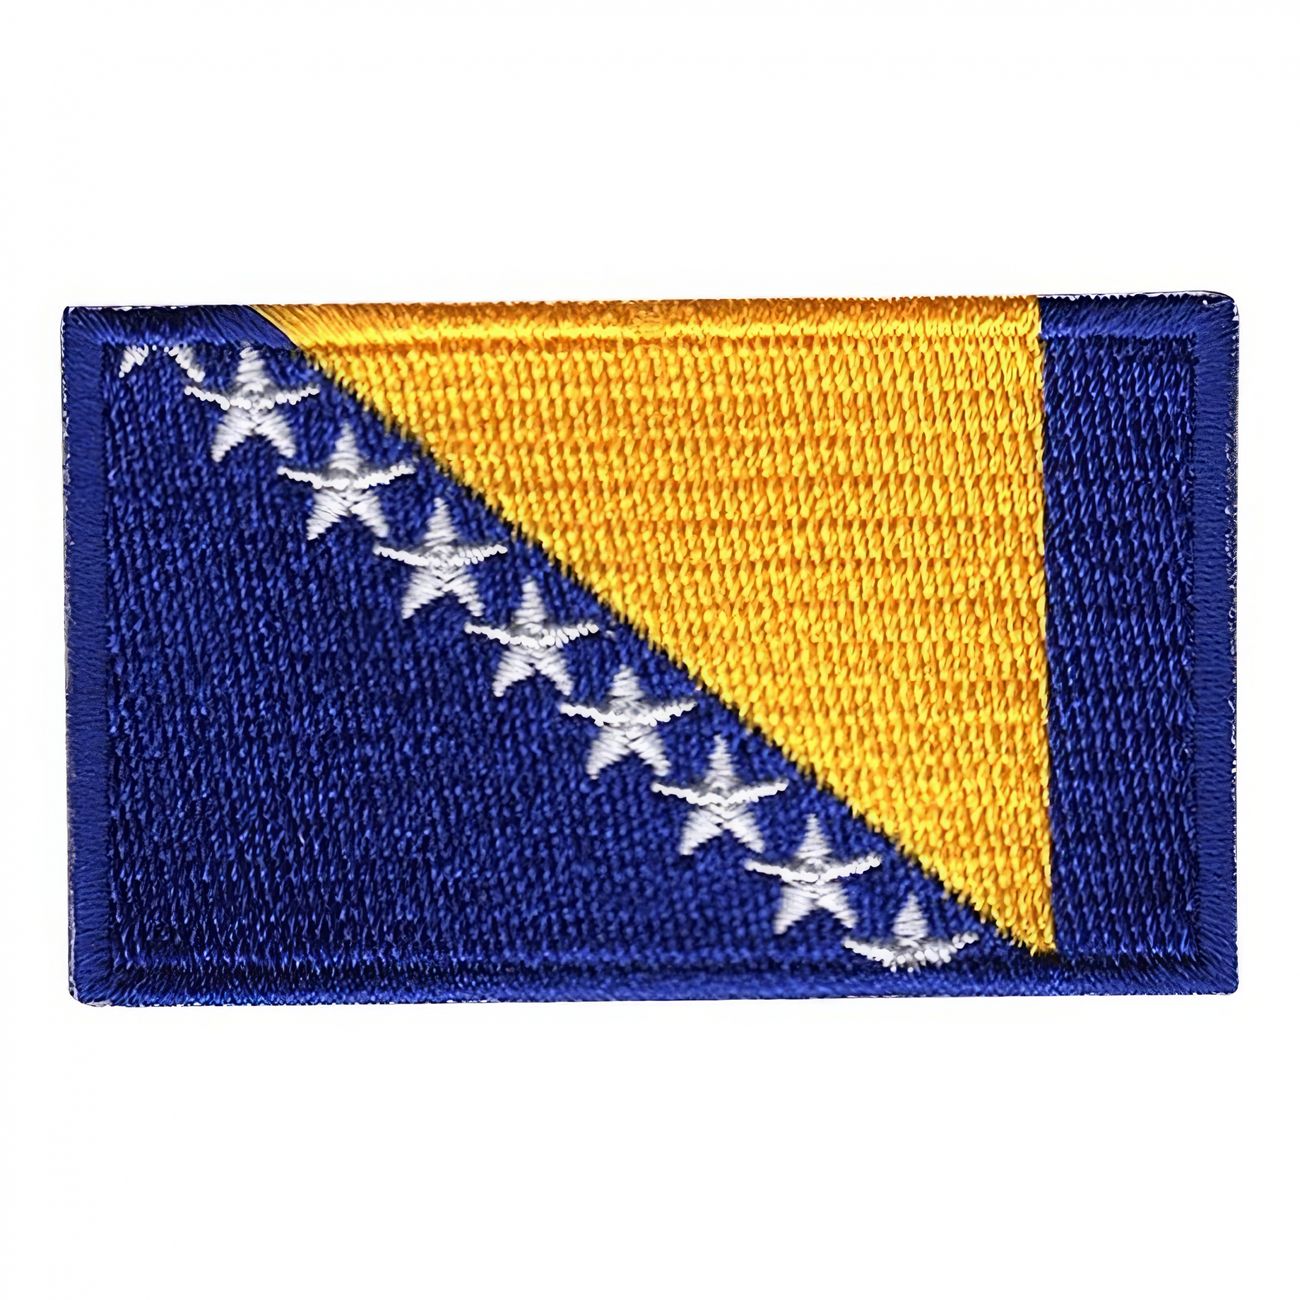 tygmarke-flagga-bosnien-och-hercegovina-94533-1